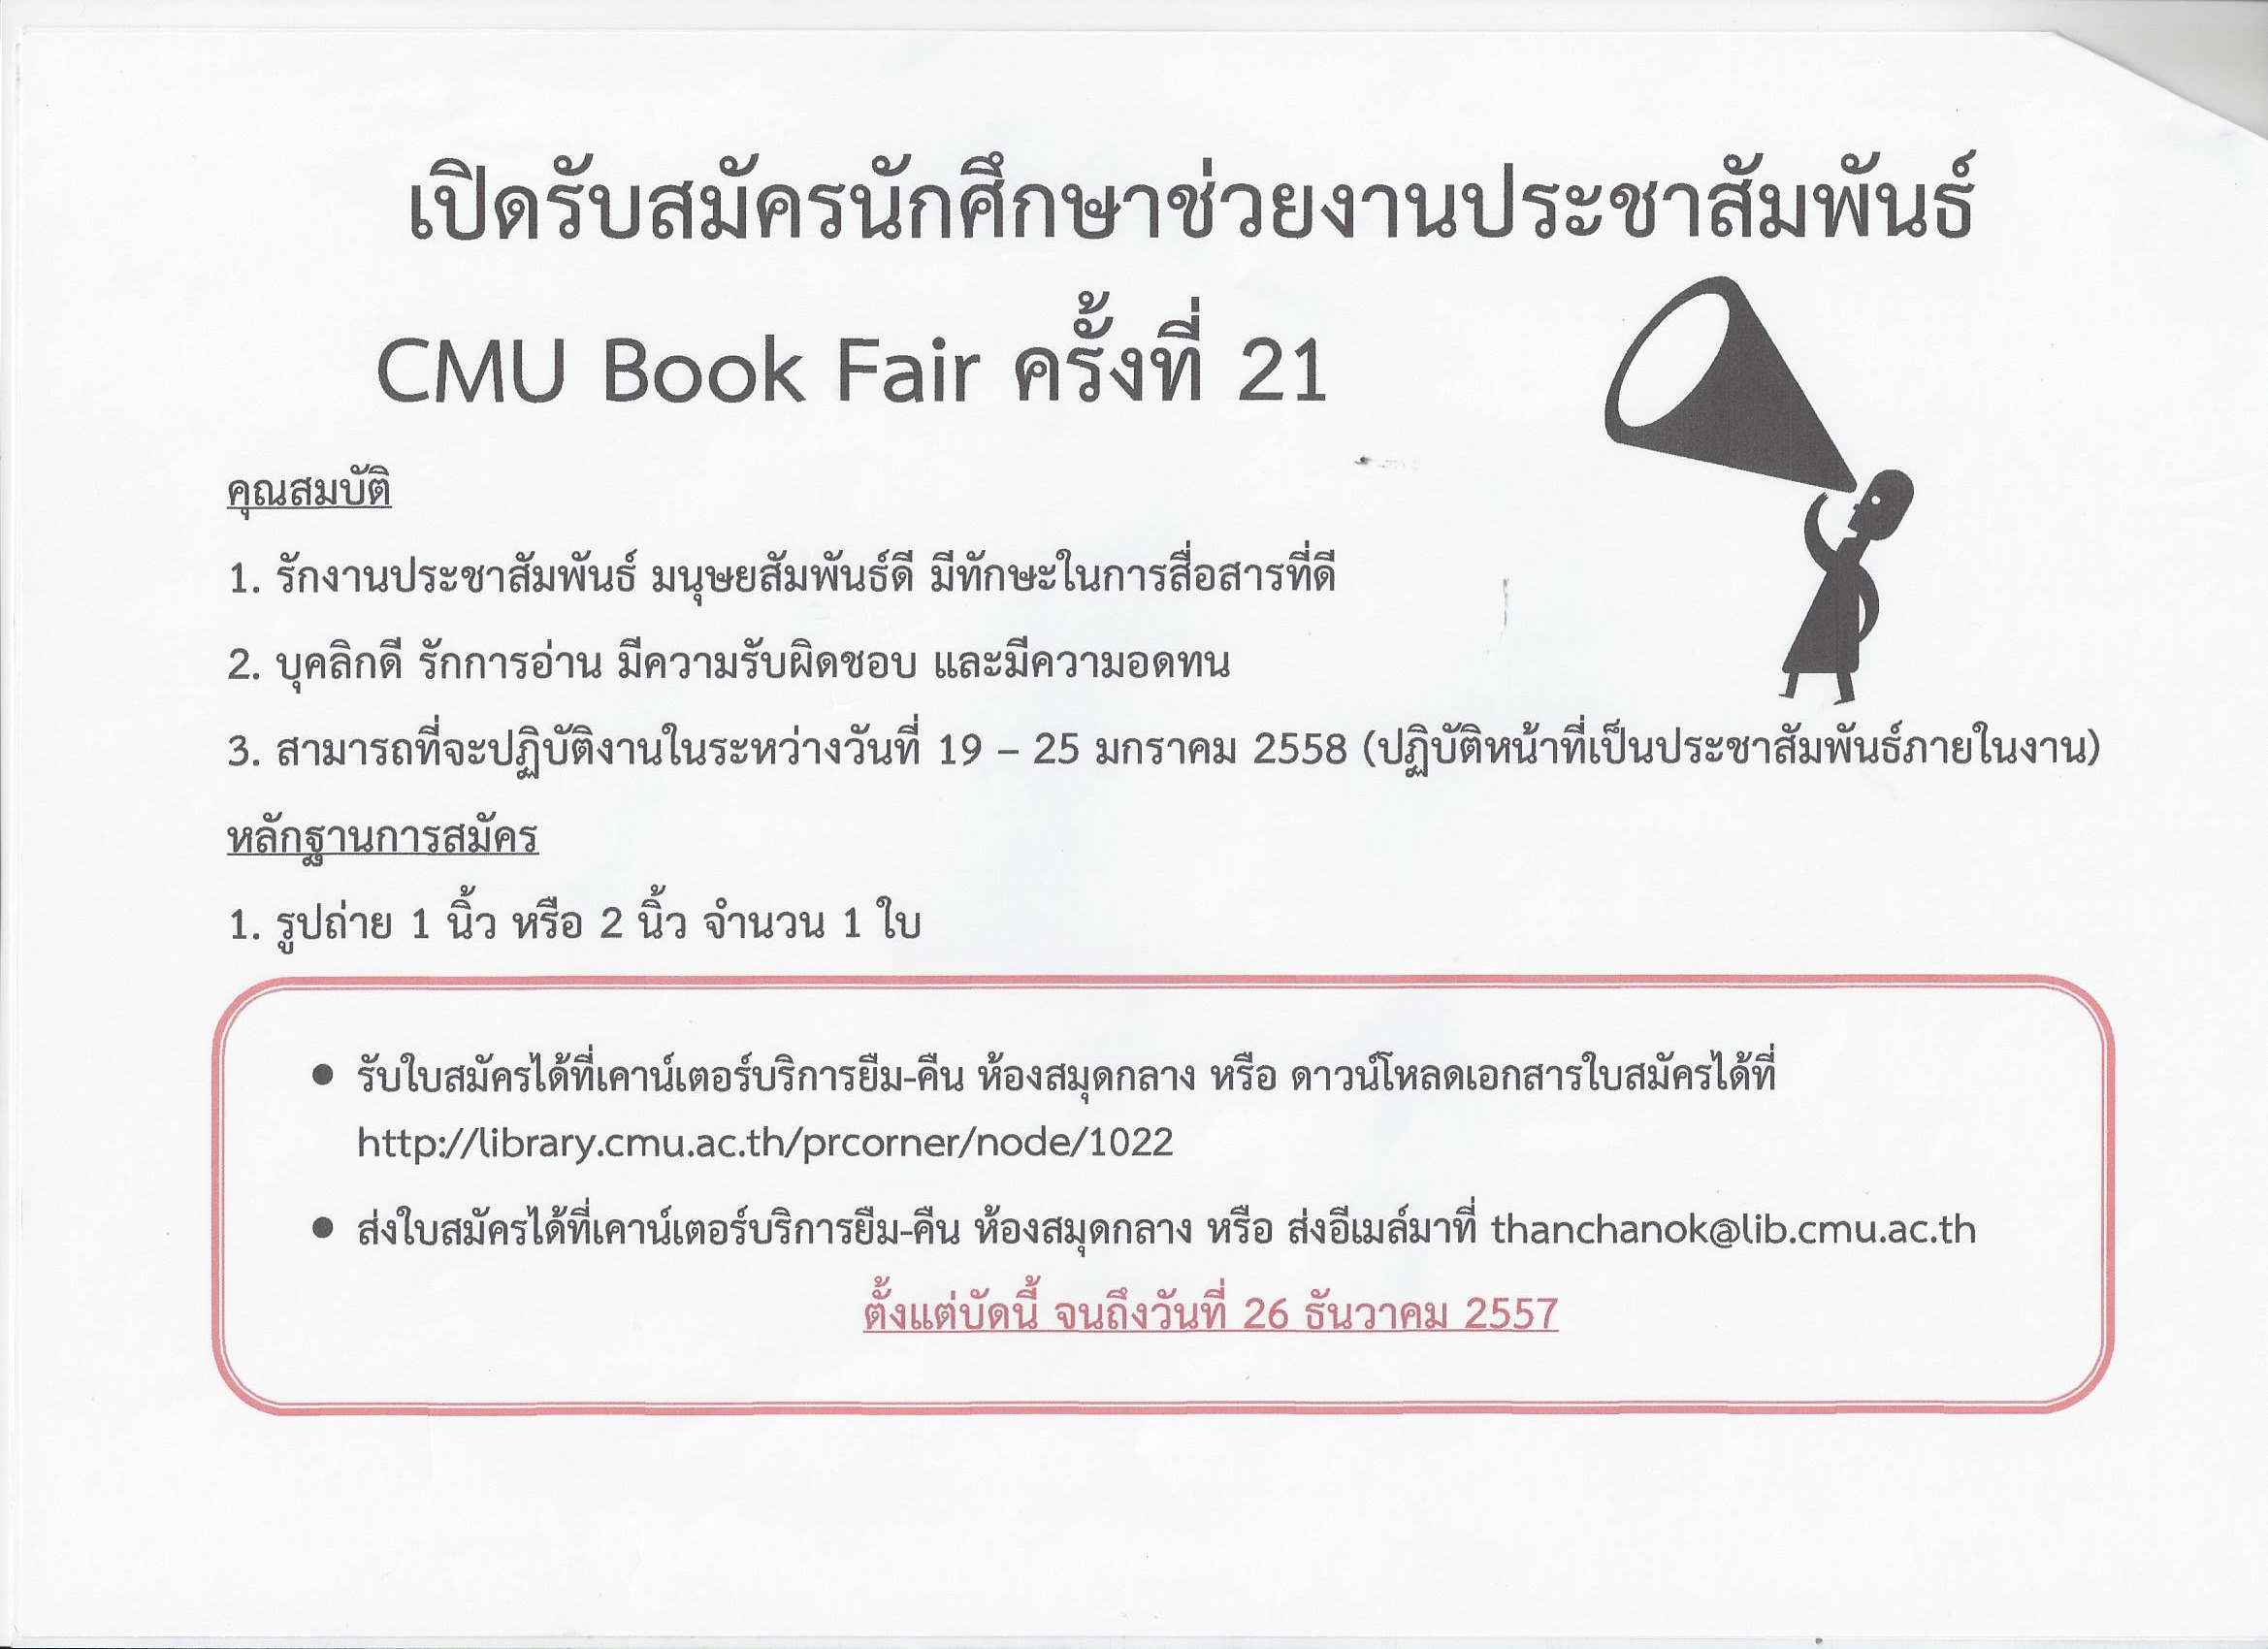 รับสมัครนักศึกษาช่วยงาน CMU BOOK FAIR 2557